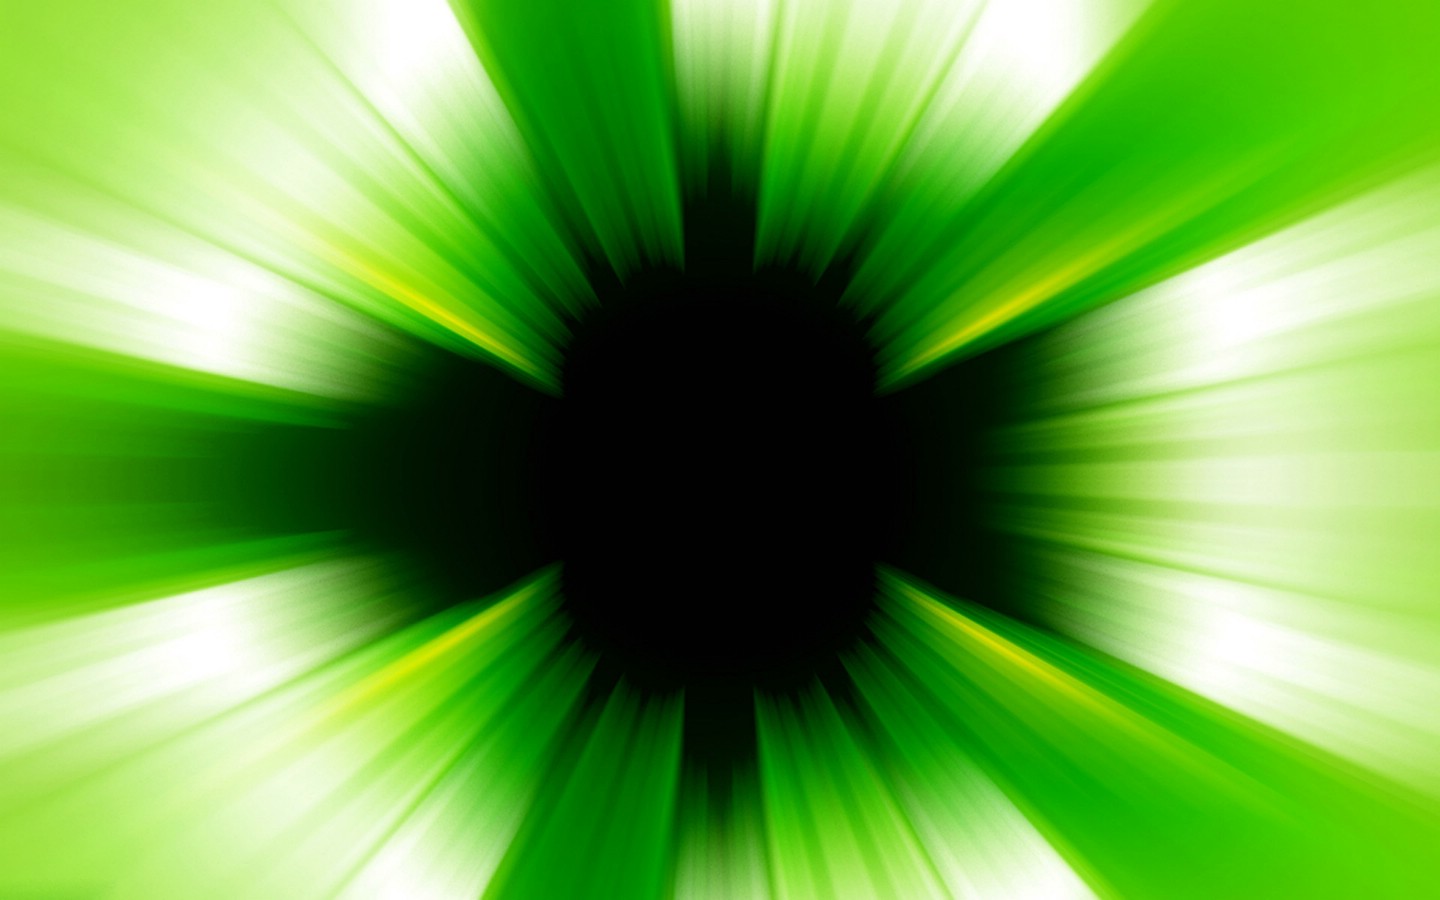 壁纸1440x900PS效果绿色光线壁纸 PS效果绿色光线壁纸 PS效果绿色光线图片 PS效果绿色光线素材 创意壁纸 创意图库 创意图片素材桌面壁纸